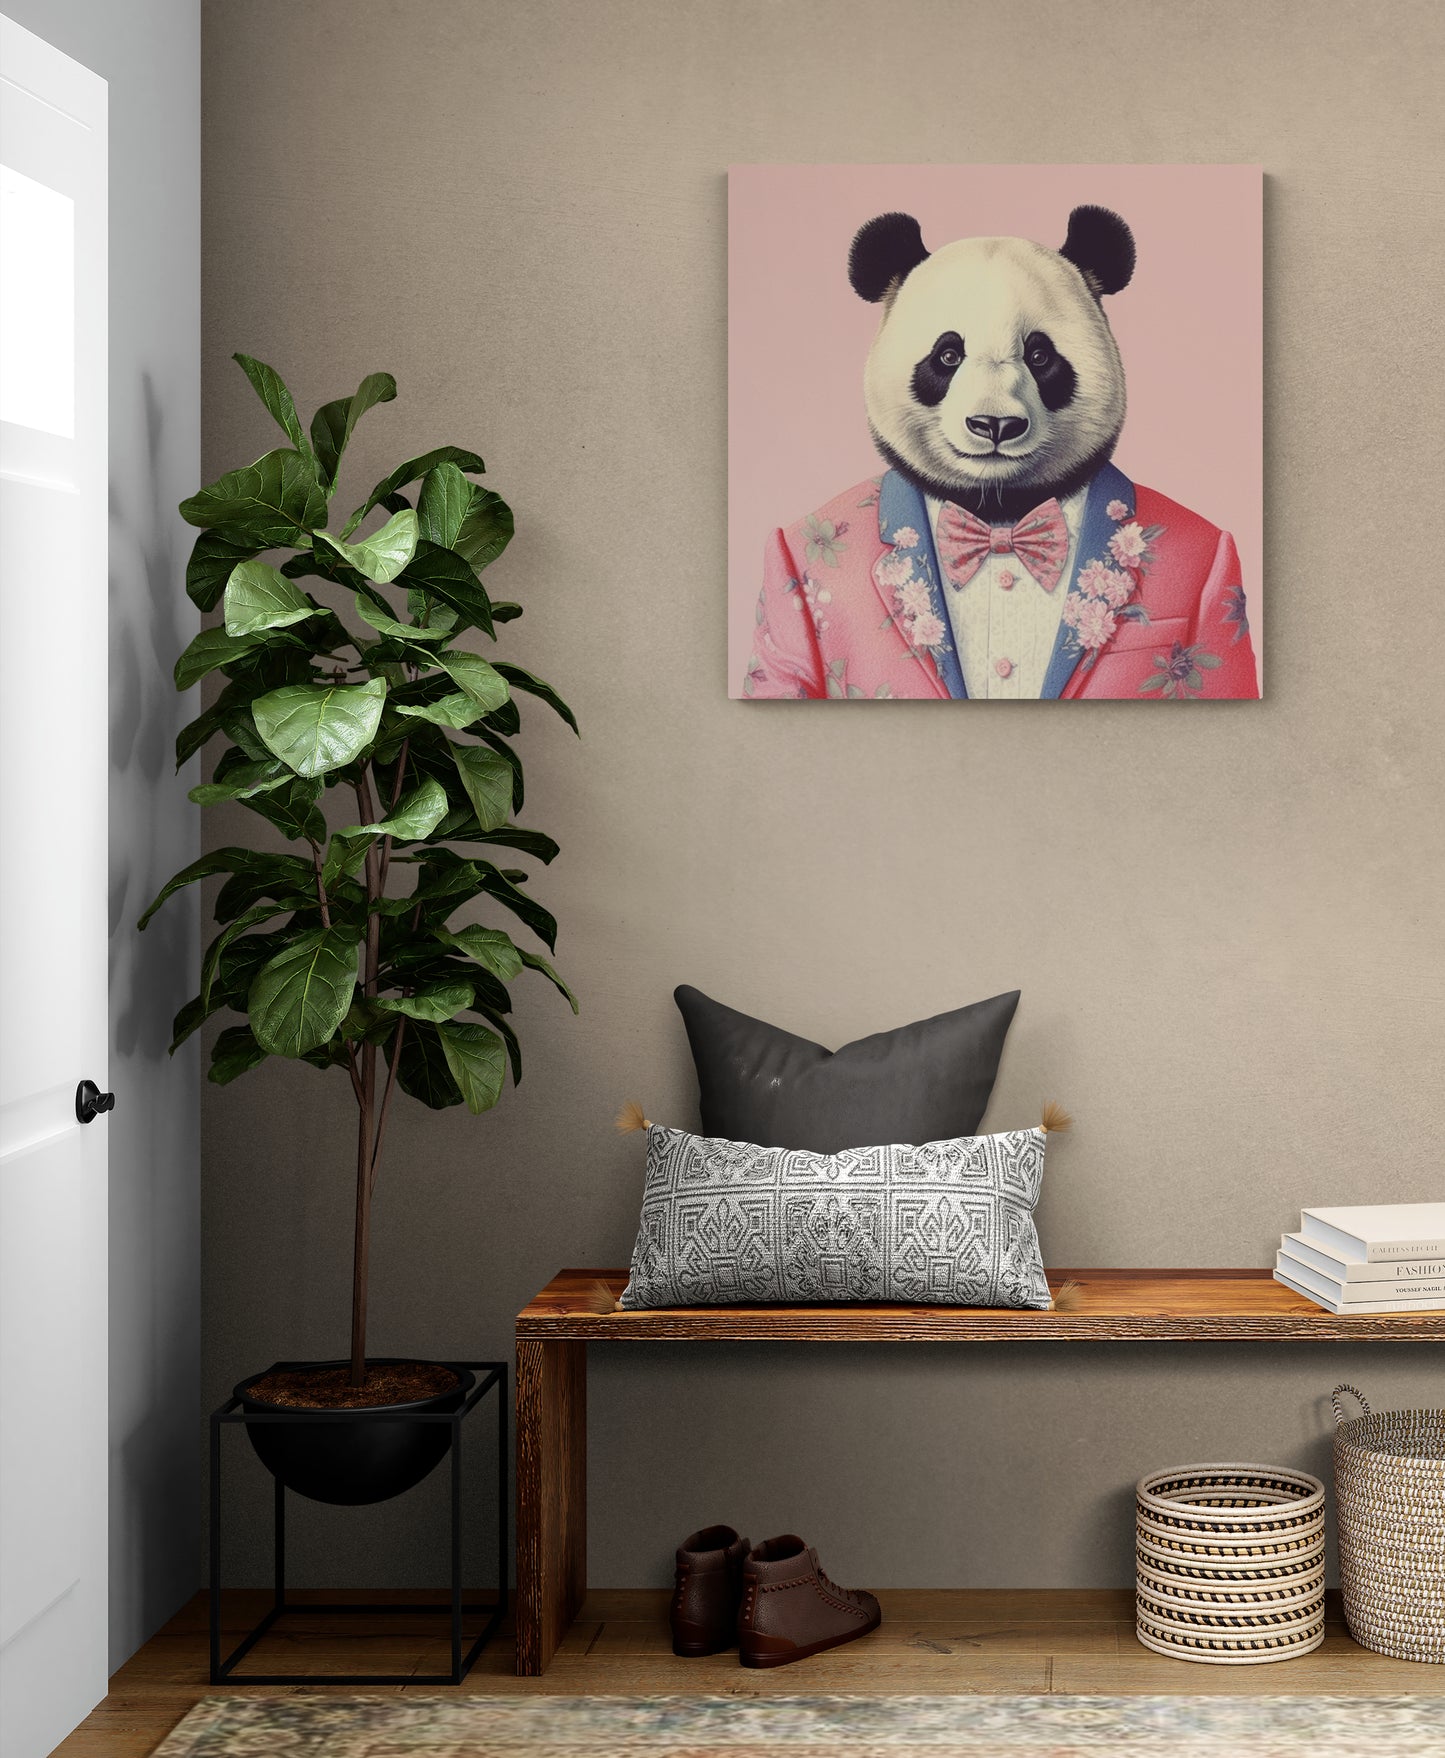 Décoration murale unique, notre tableau panda apporte une touche de couleur et d'originalité à une entrée de maison